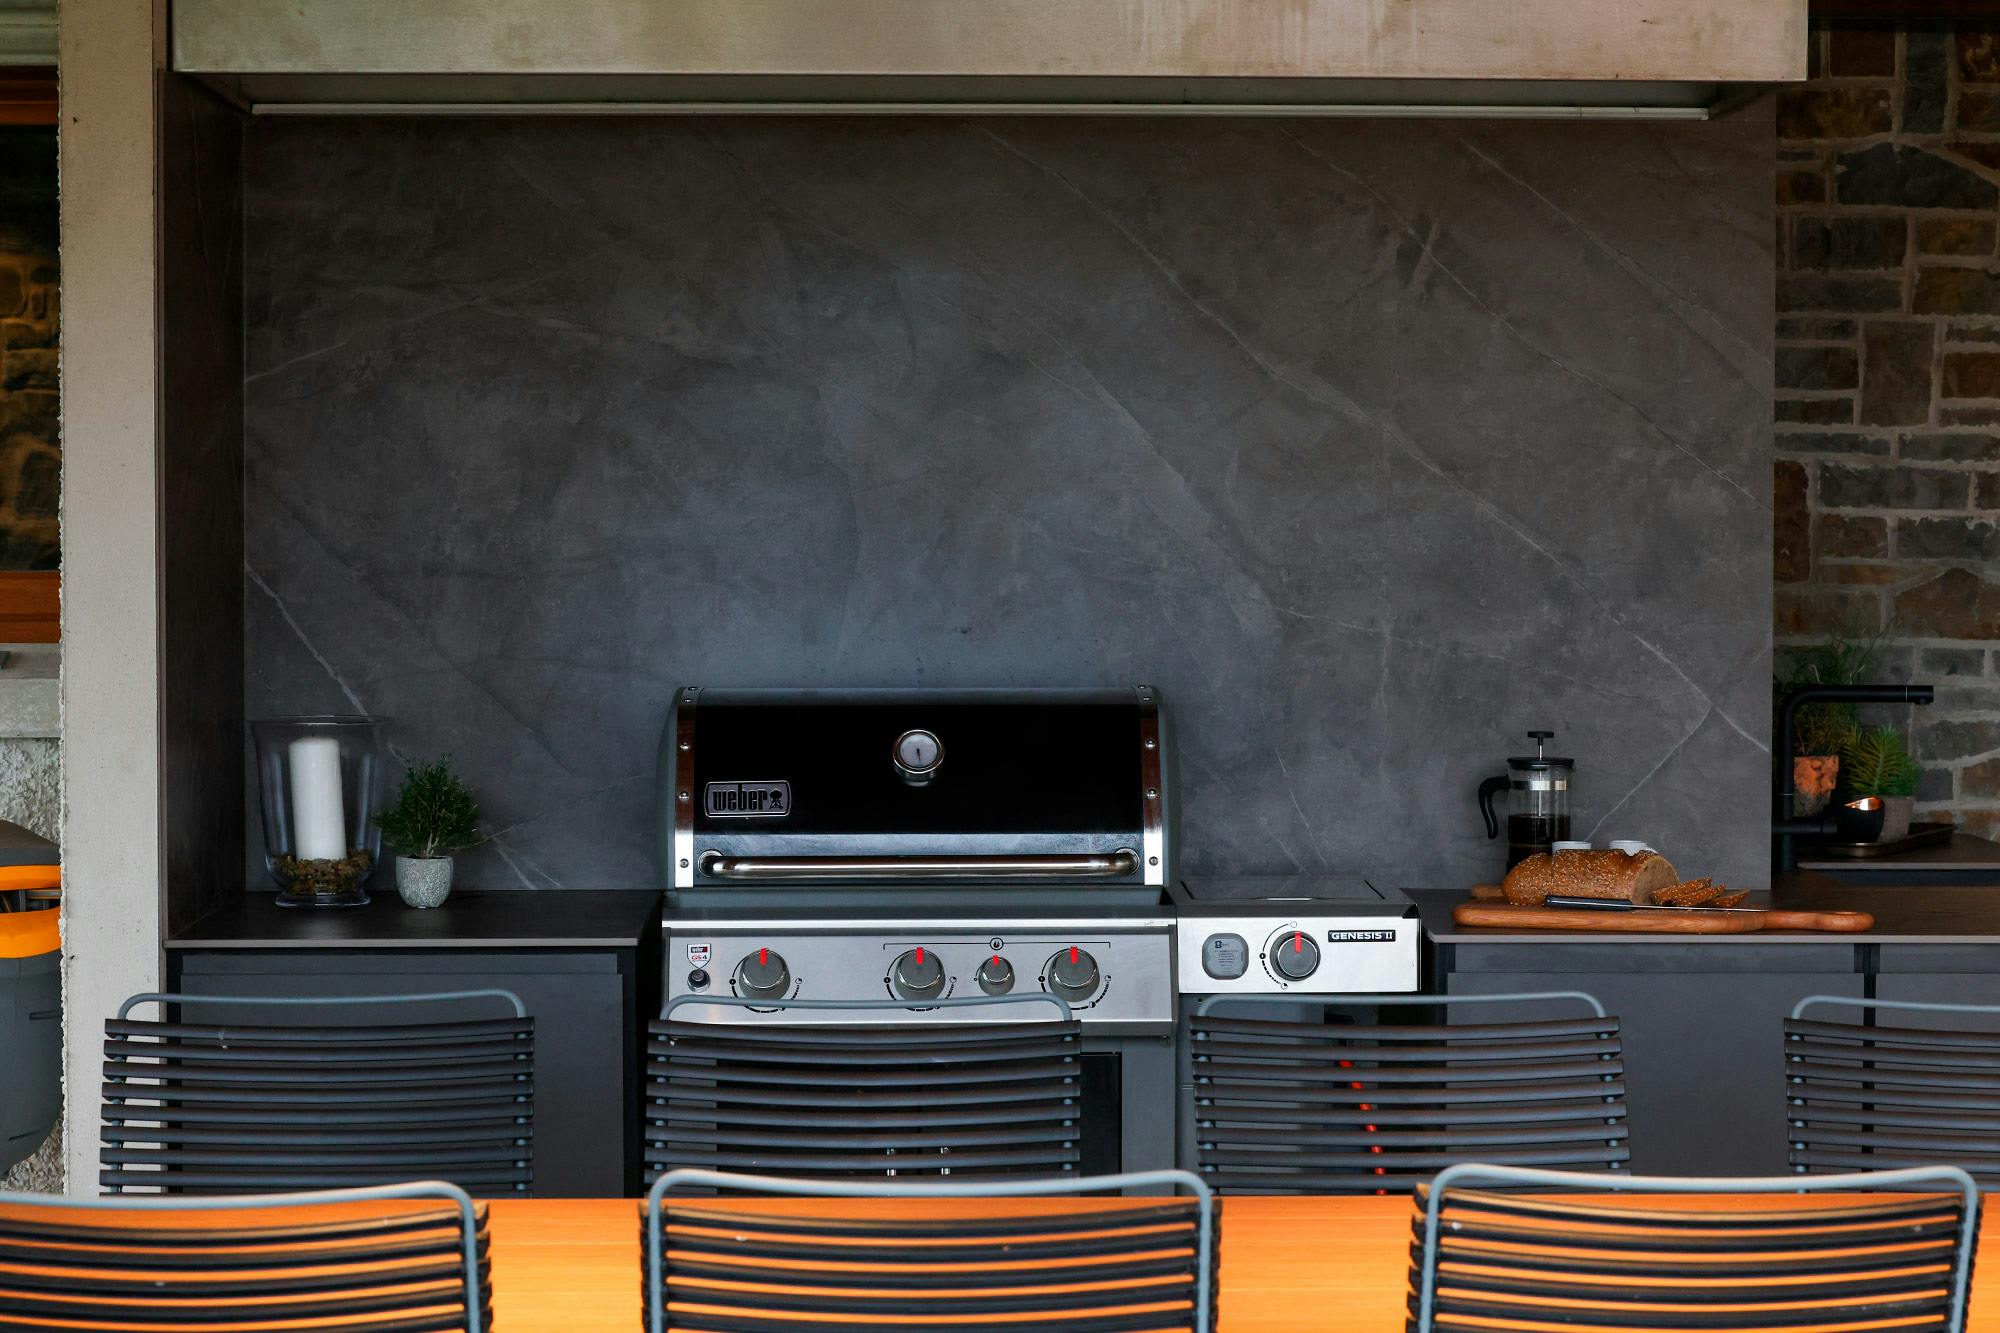 Bildnummer 38 des aktuellen Abschnitts von The perfect rustic outdoor kitchen with DKTN and Urban Bonfire von Cosentino Deutschland